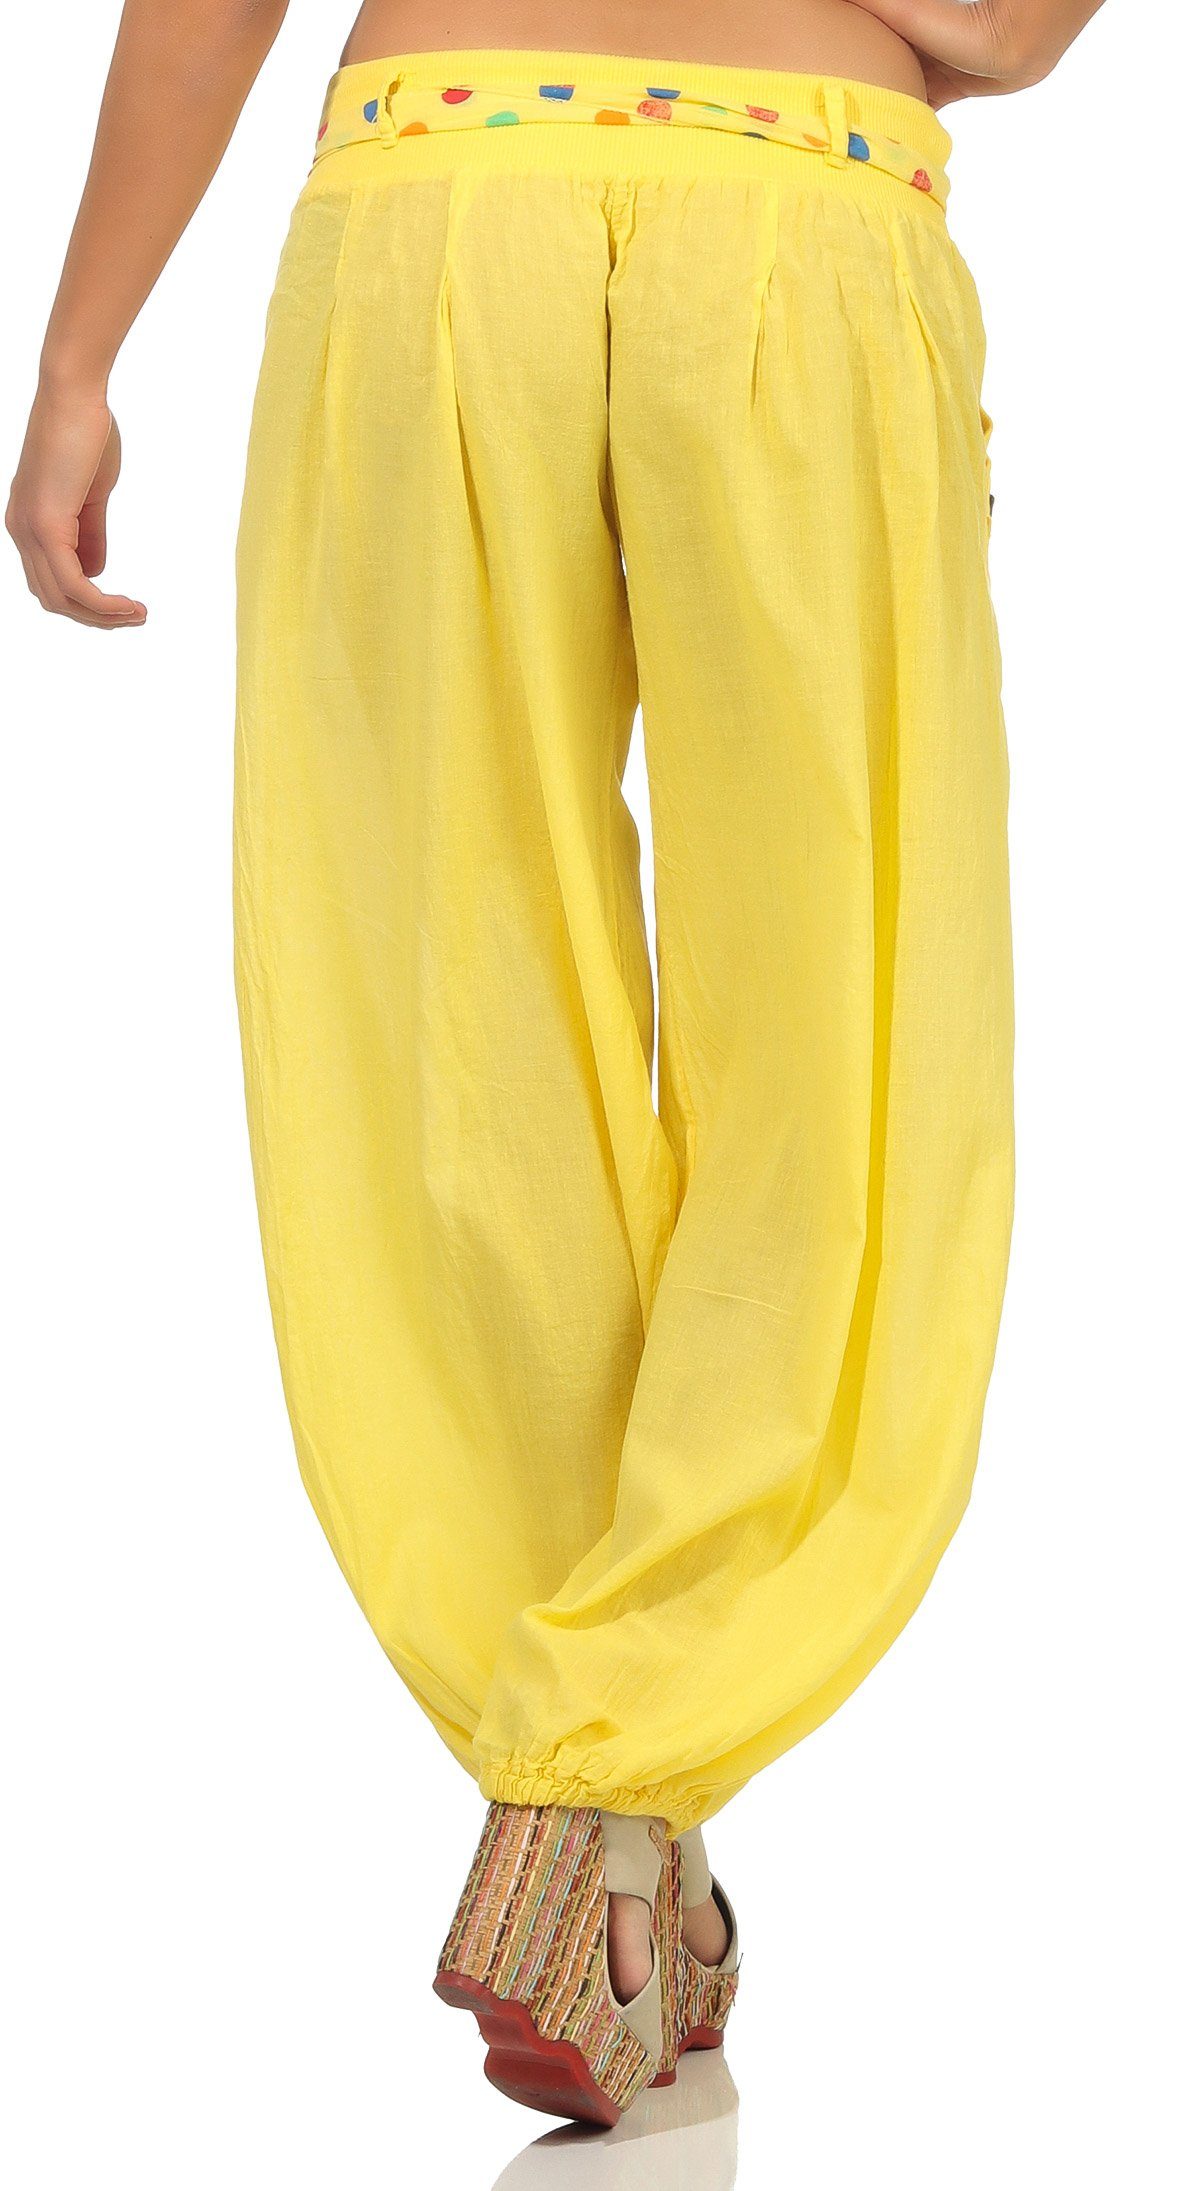 malito than mit Stoffgürtel gelb Haremshose Einheitsgröße 3417 passendem farblich fashion more